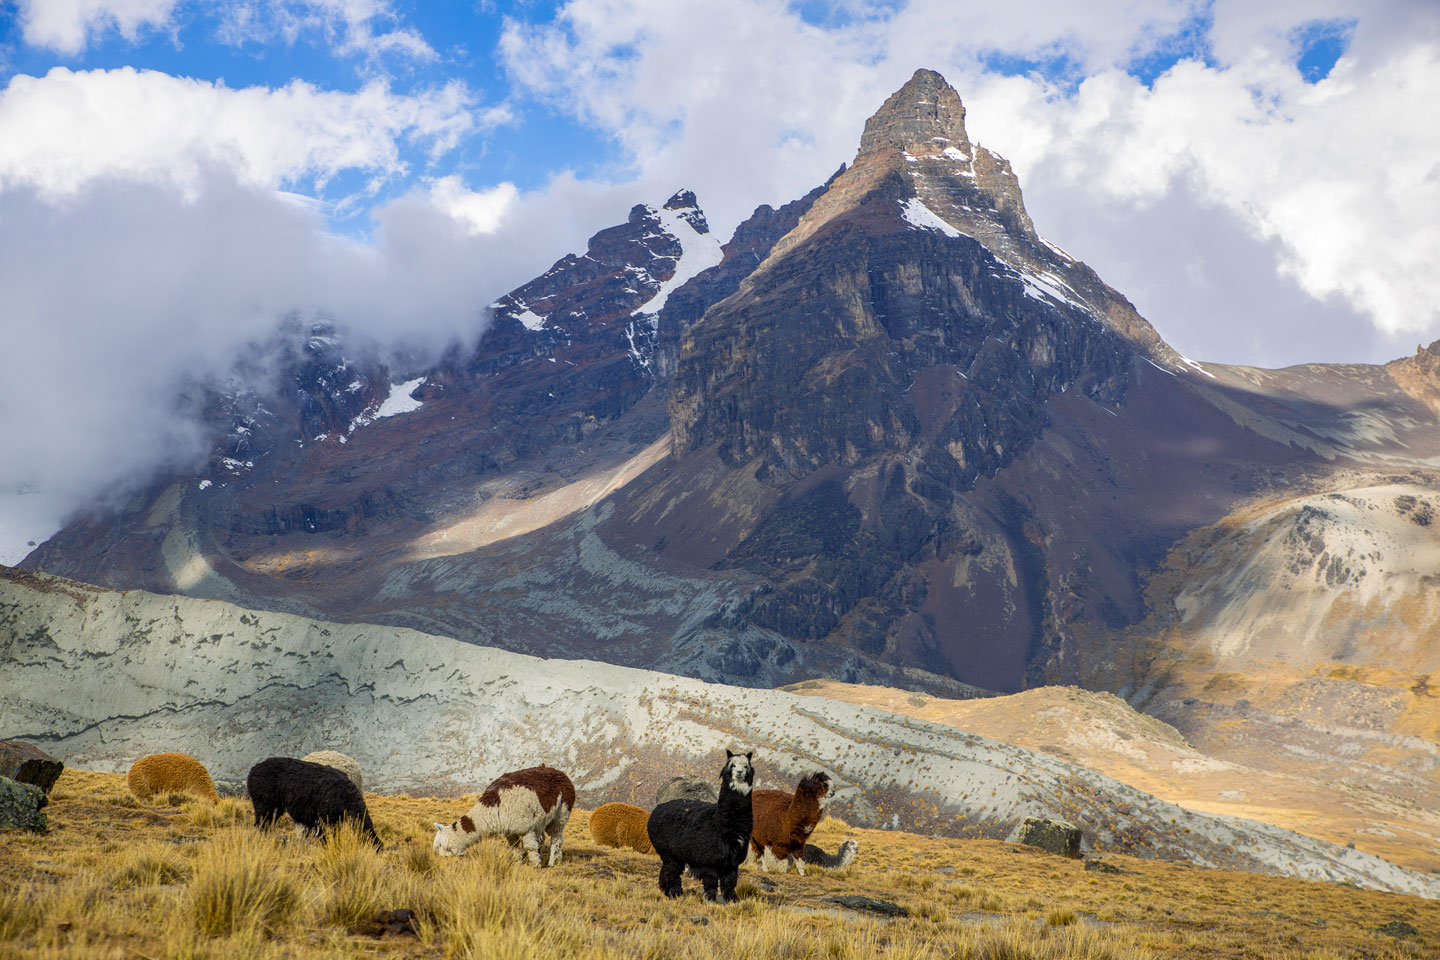 Llamas near Aguja Negra mountain in the Kunturiri (Condoriri) massive in the Cordillera Real, north of La Paz